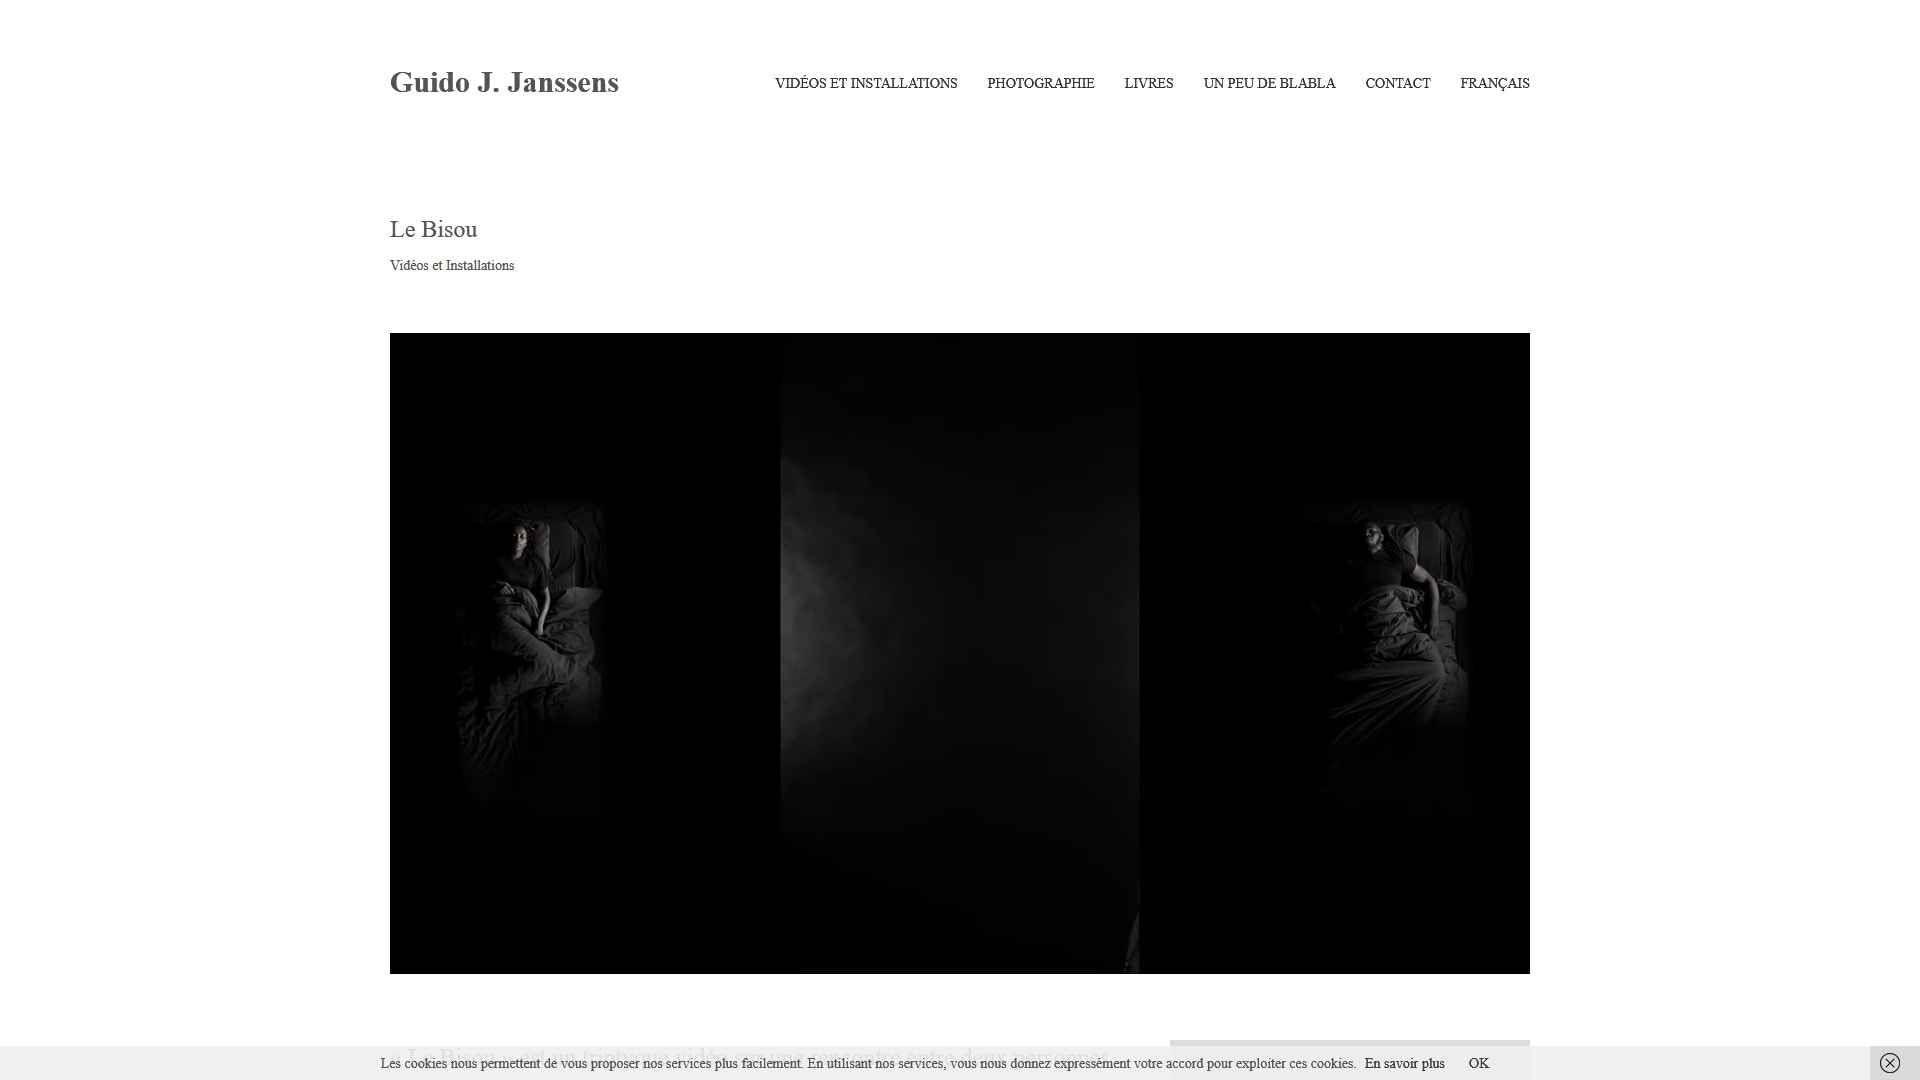 Guido Janssens Artist website